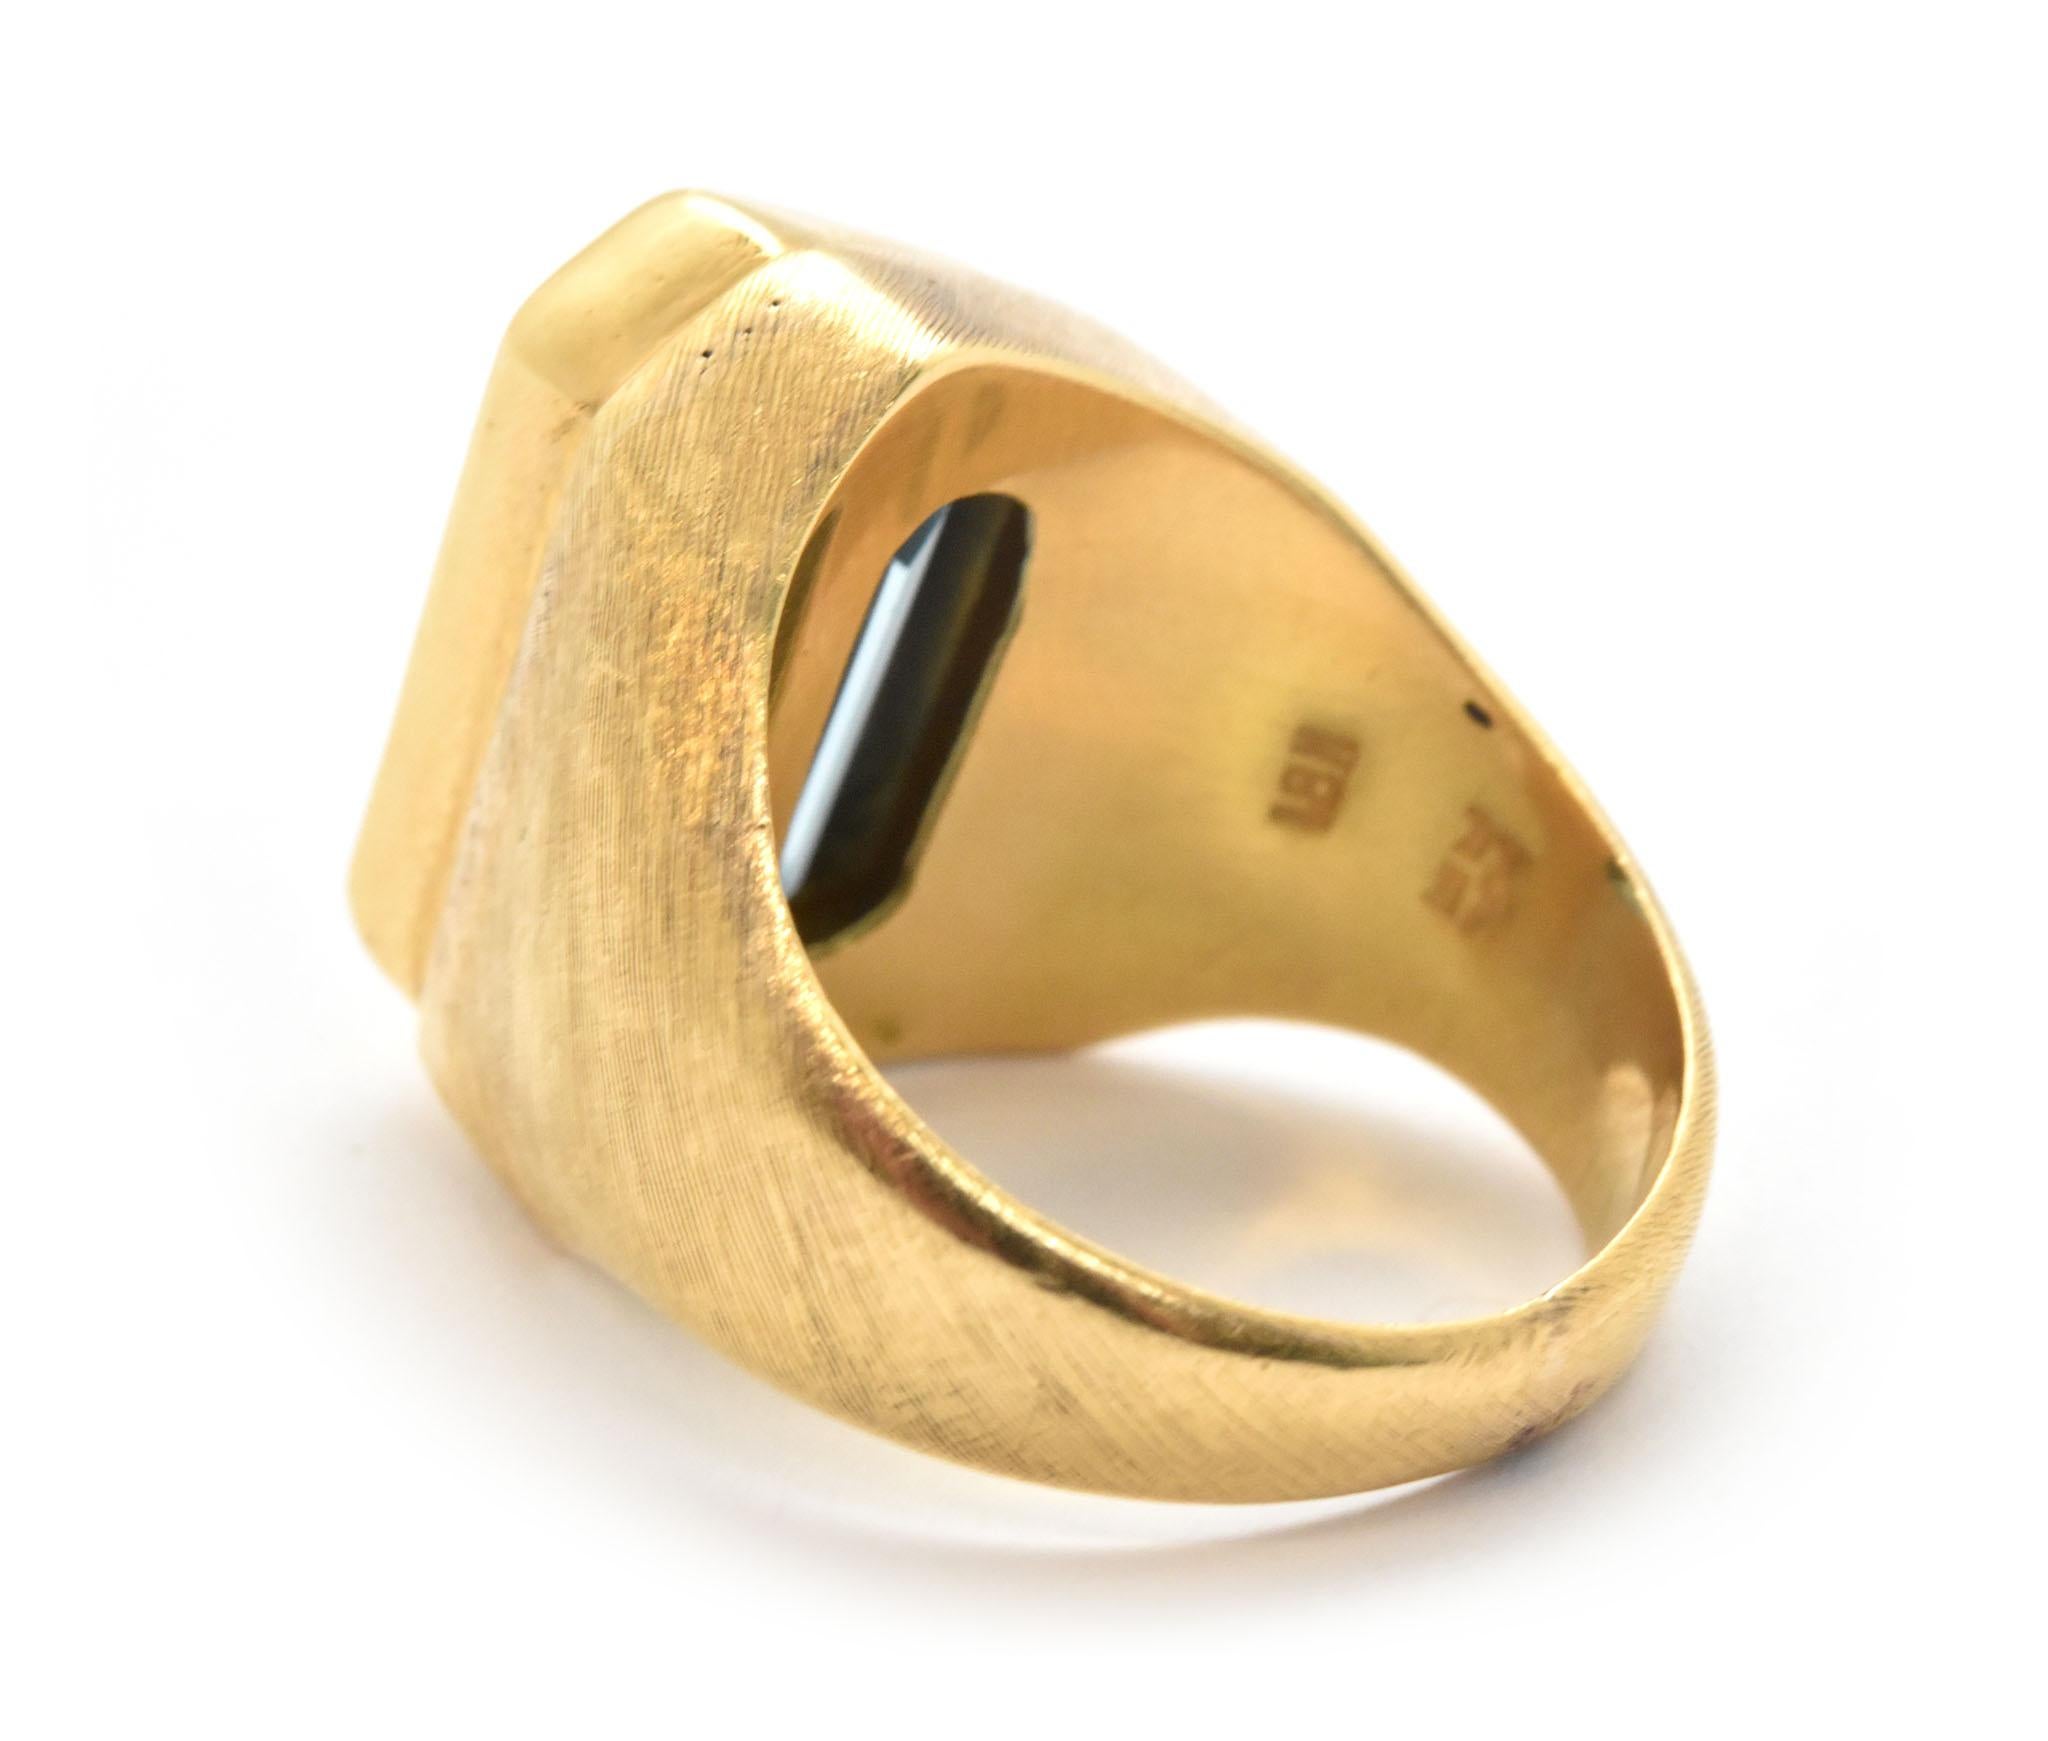 burle marx ring